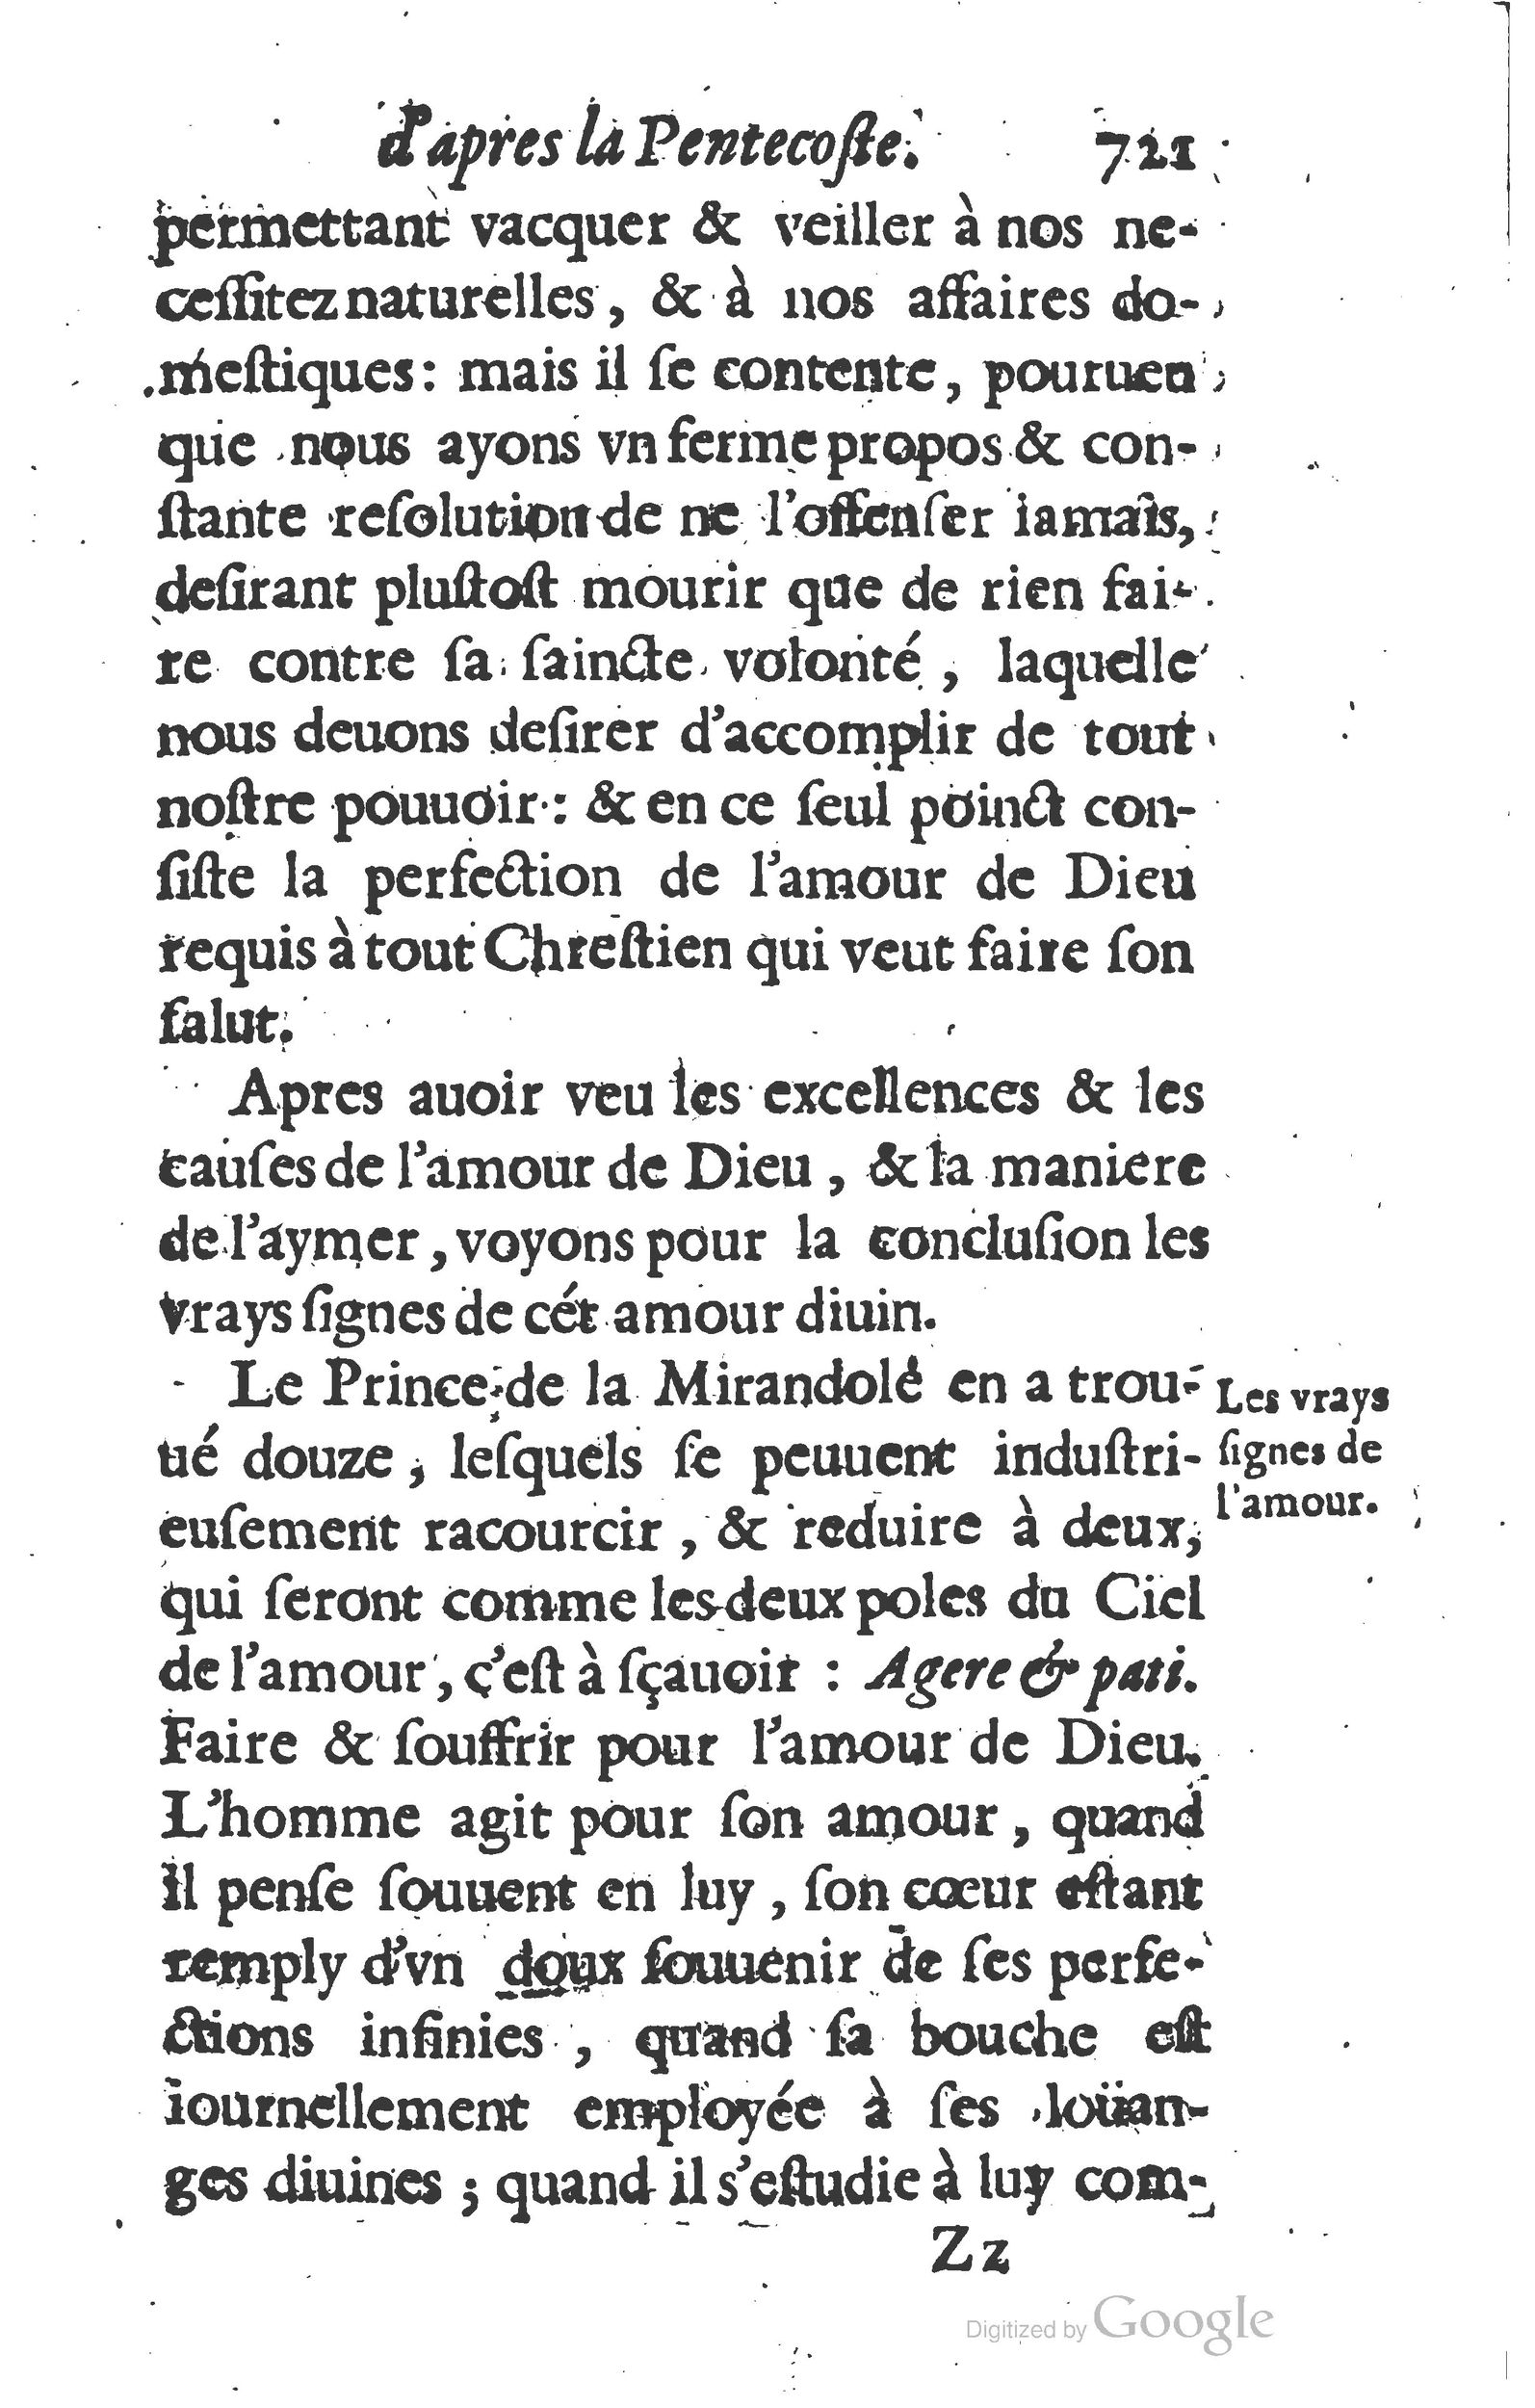 1629 Sermons ou trésor de la piété chrétienne_Page_744.jpg